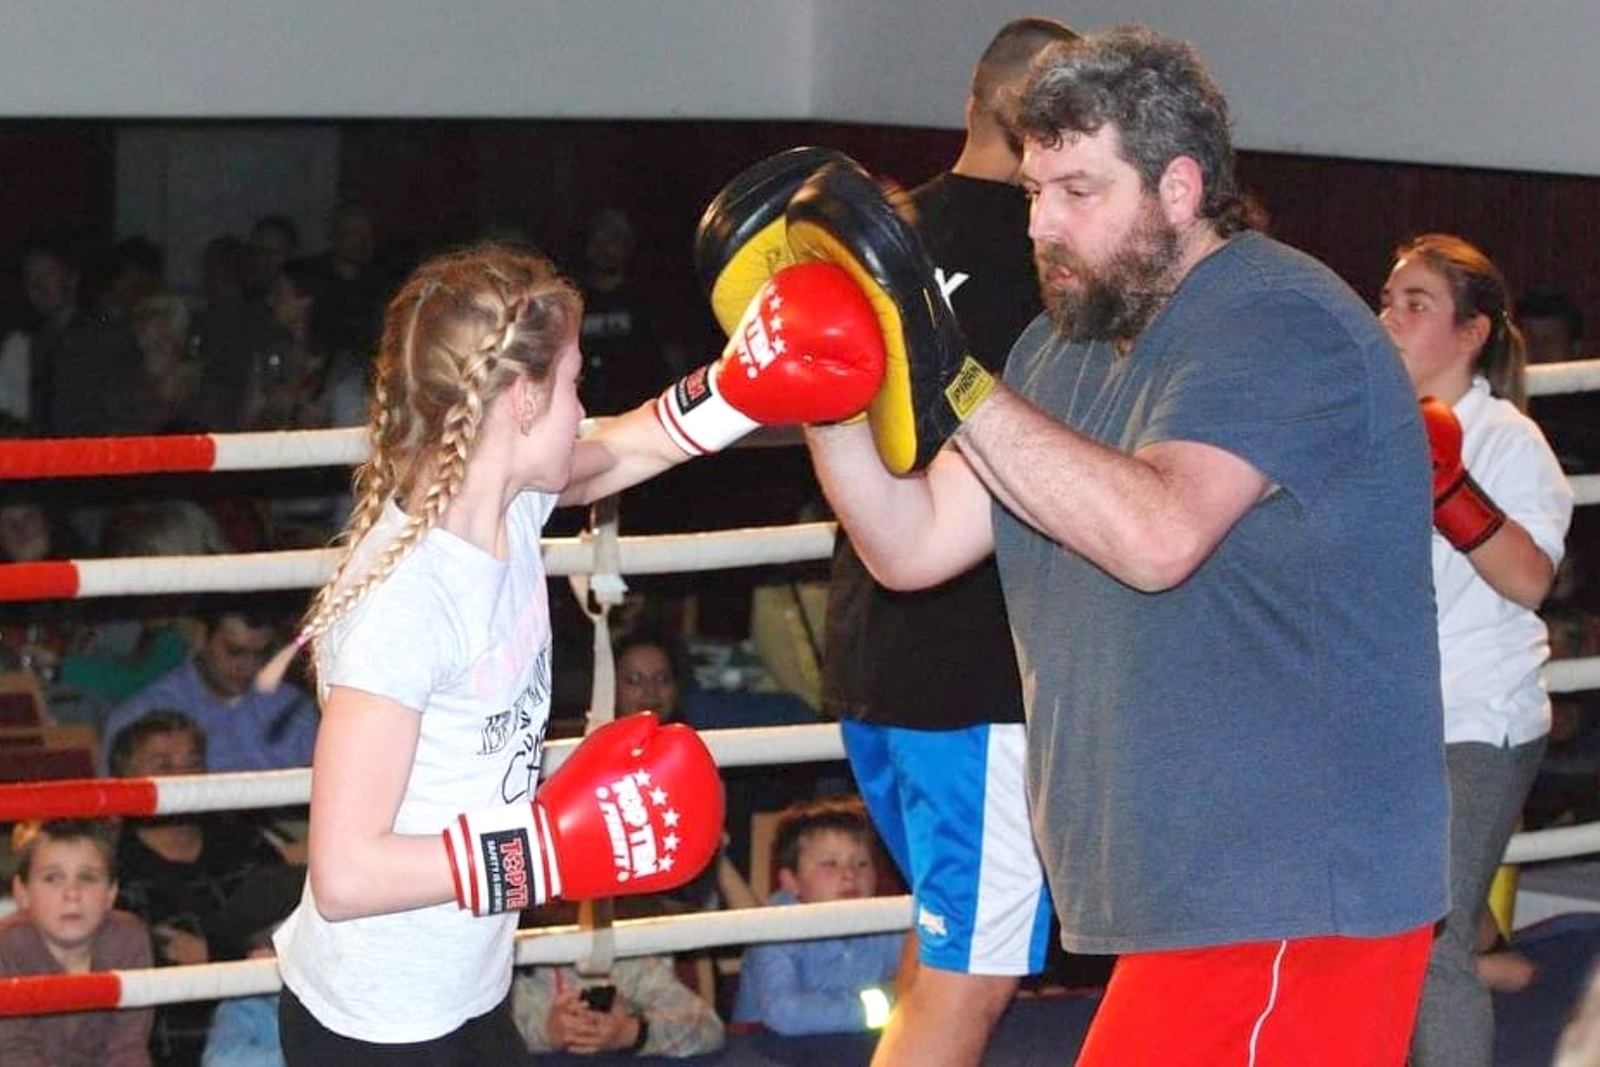 FOTO: Rakovnický trenér boxu Kapoun: Není dobré děti do sportu nutit -  Rakovnický deník